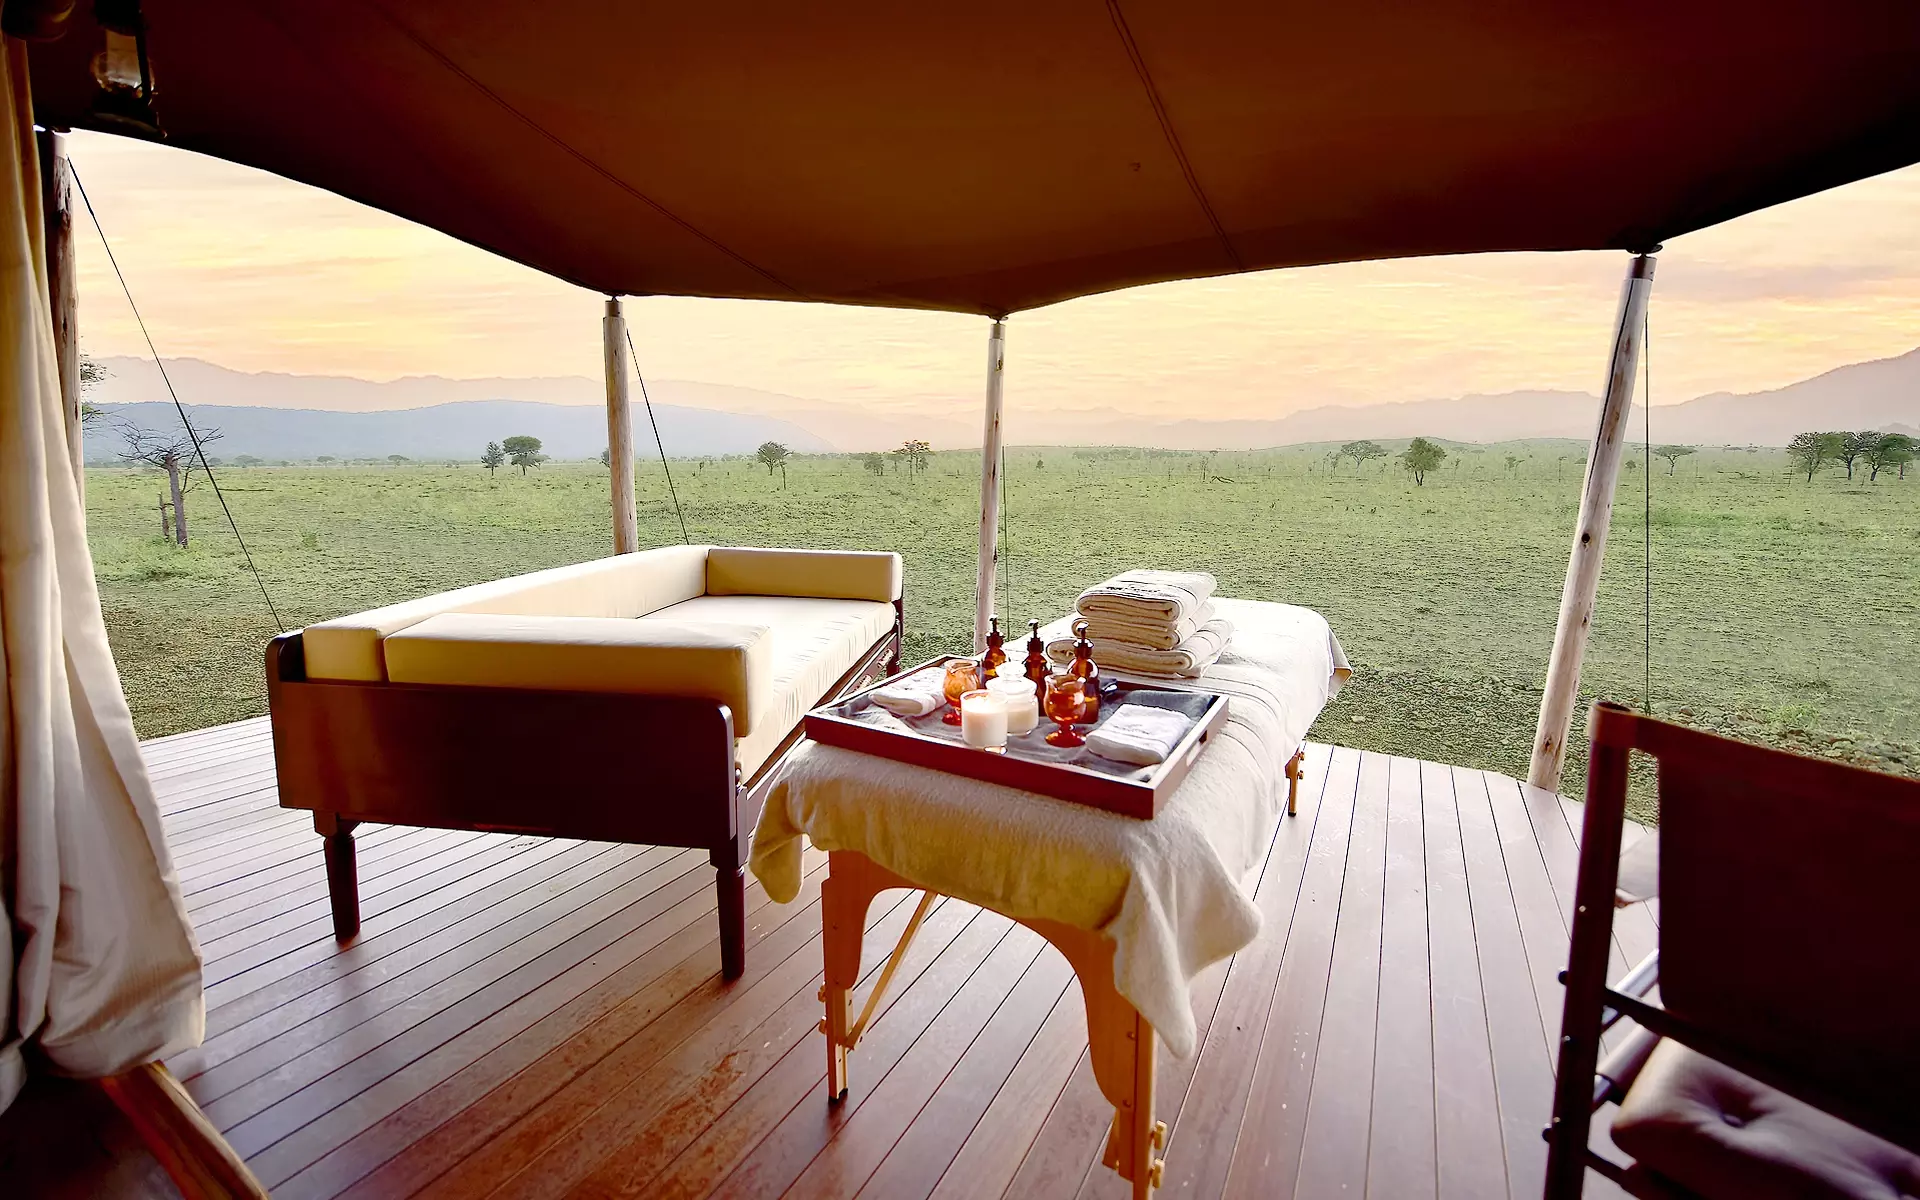 Luxury massage experience on African Safari